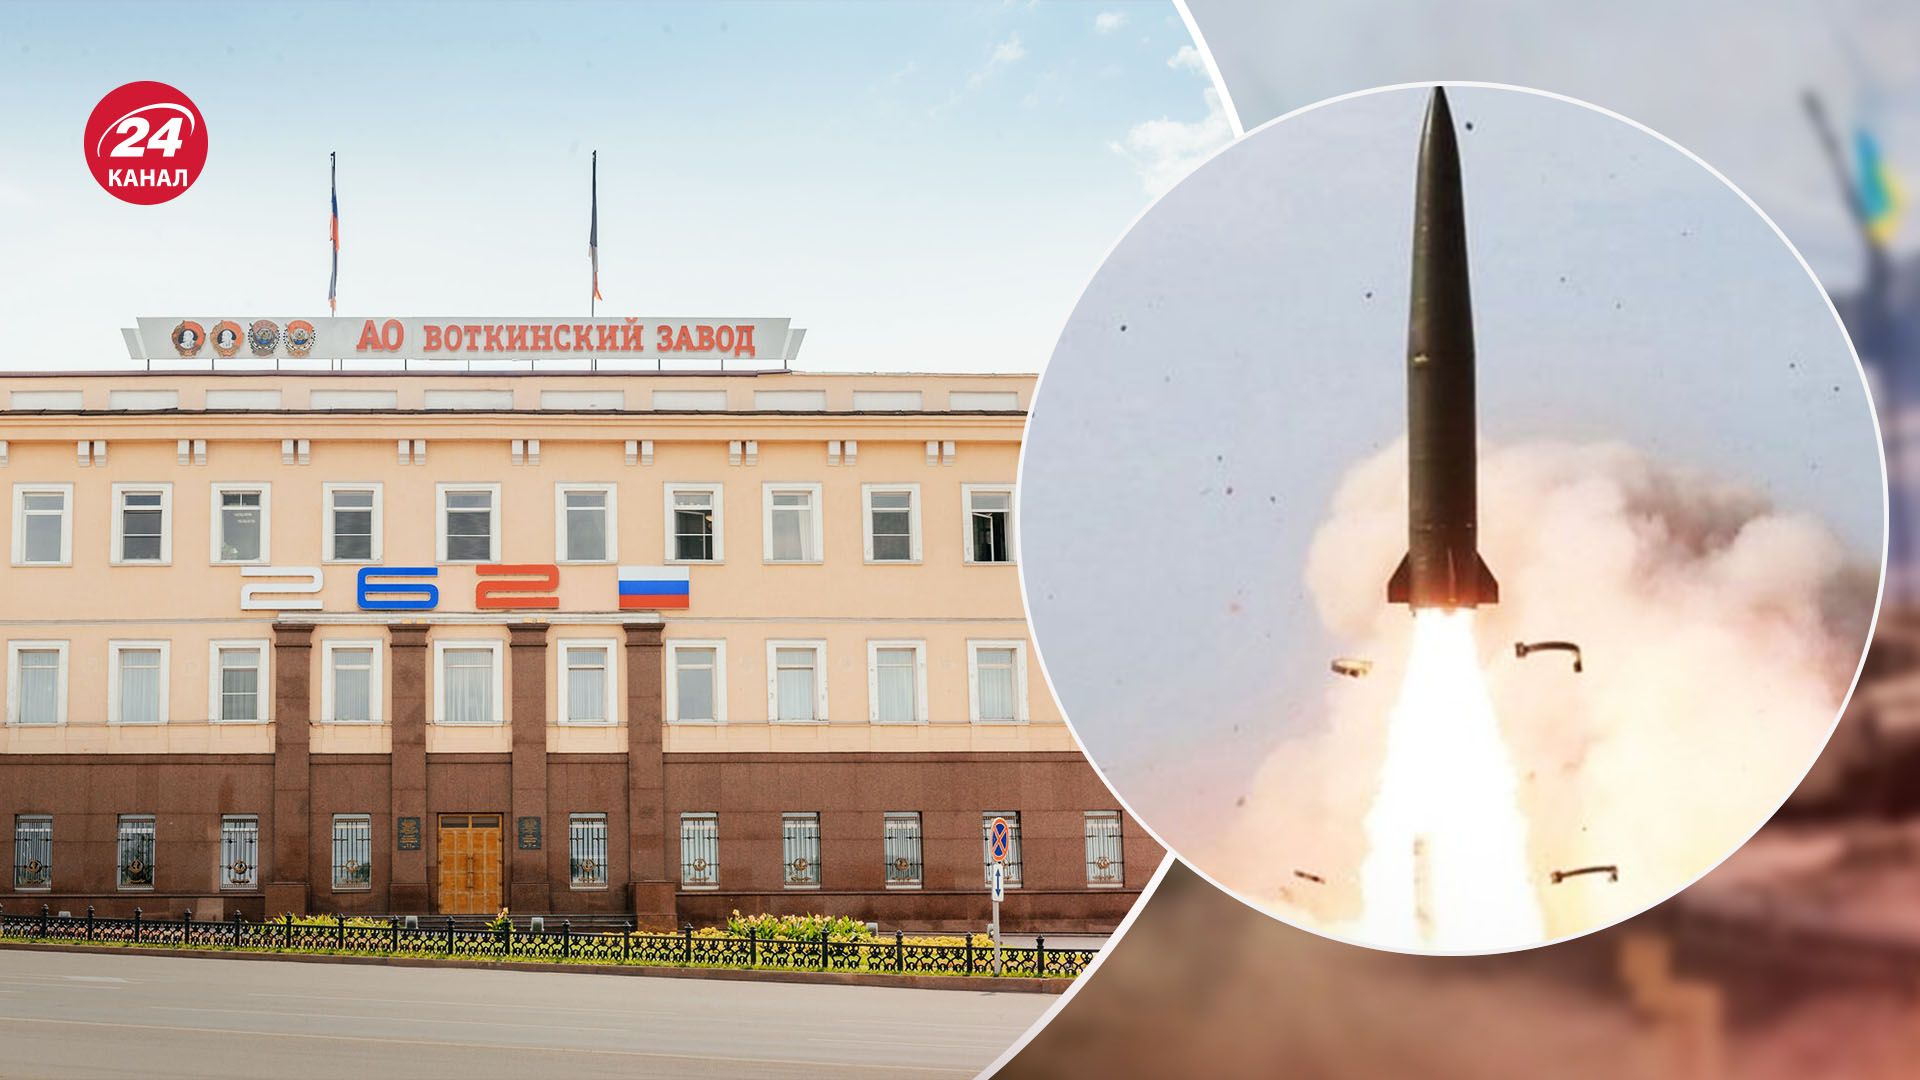 Взрыв на Воткинском заводе - что произошло на самом деле: диверсия или взрыв ракеты - 24 Канал